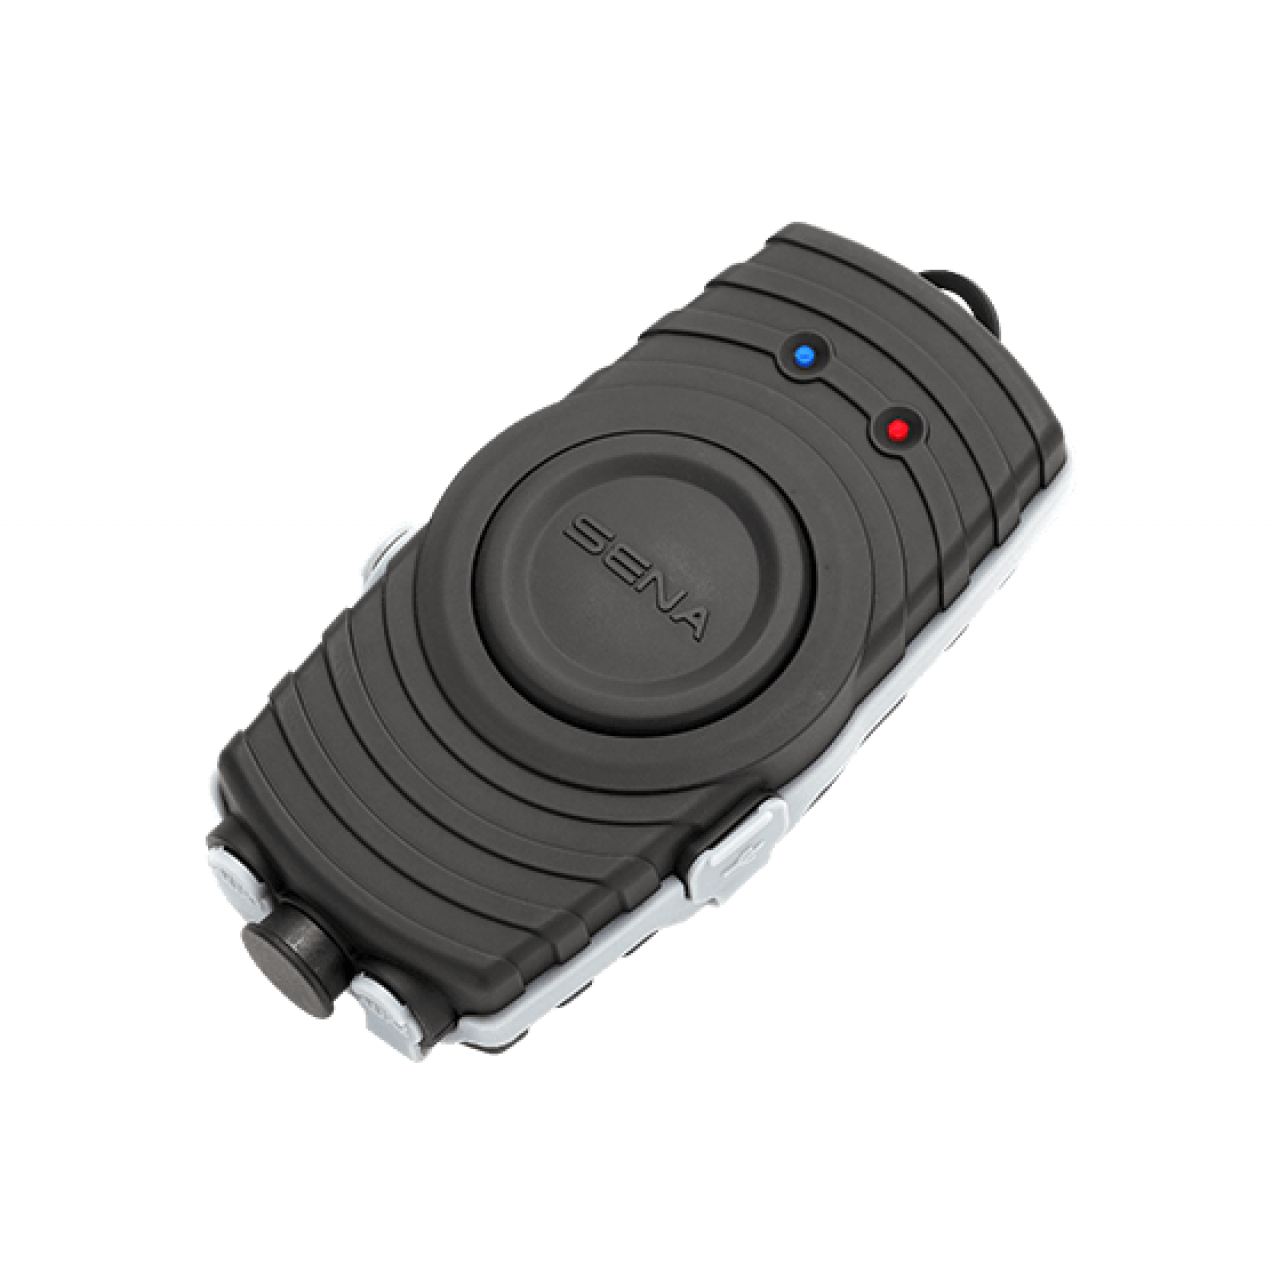 Adaptateur Bluetooth pour radio bi-directionnelle AD-SESR10